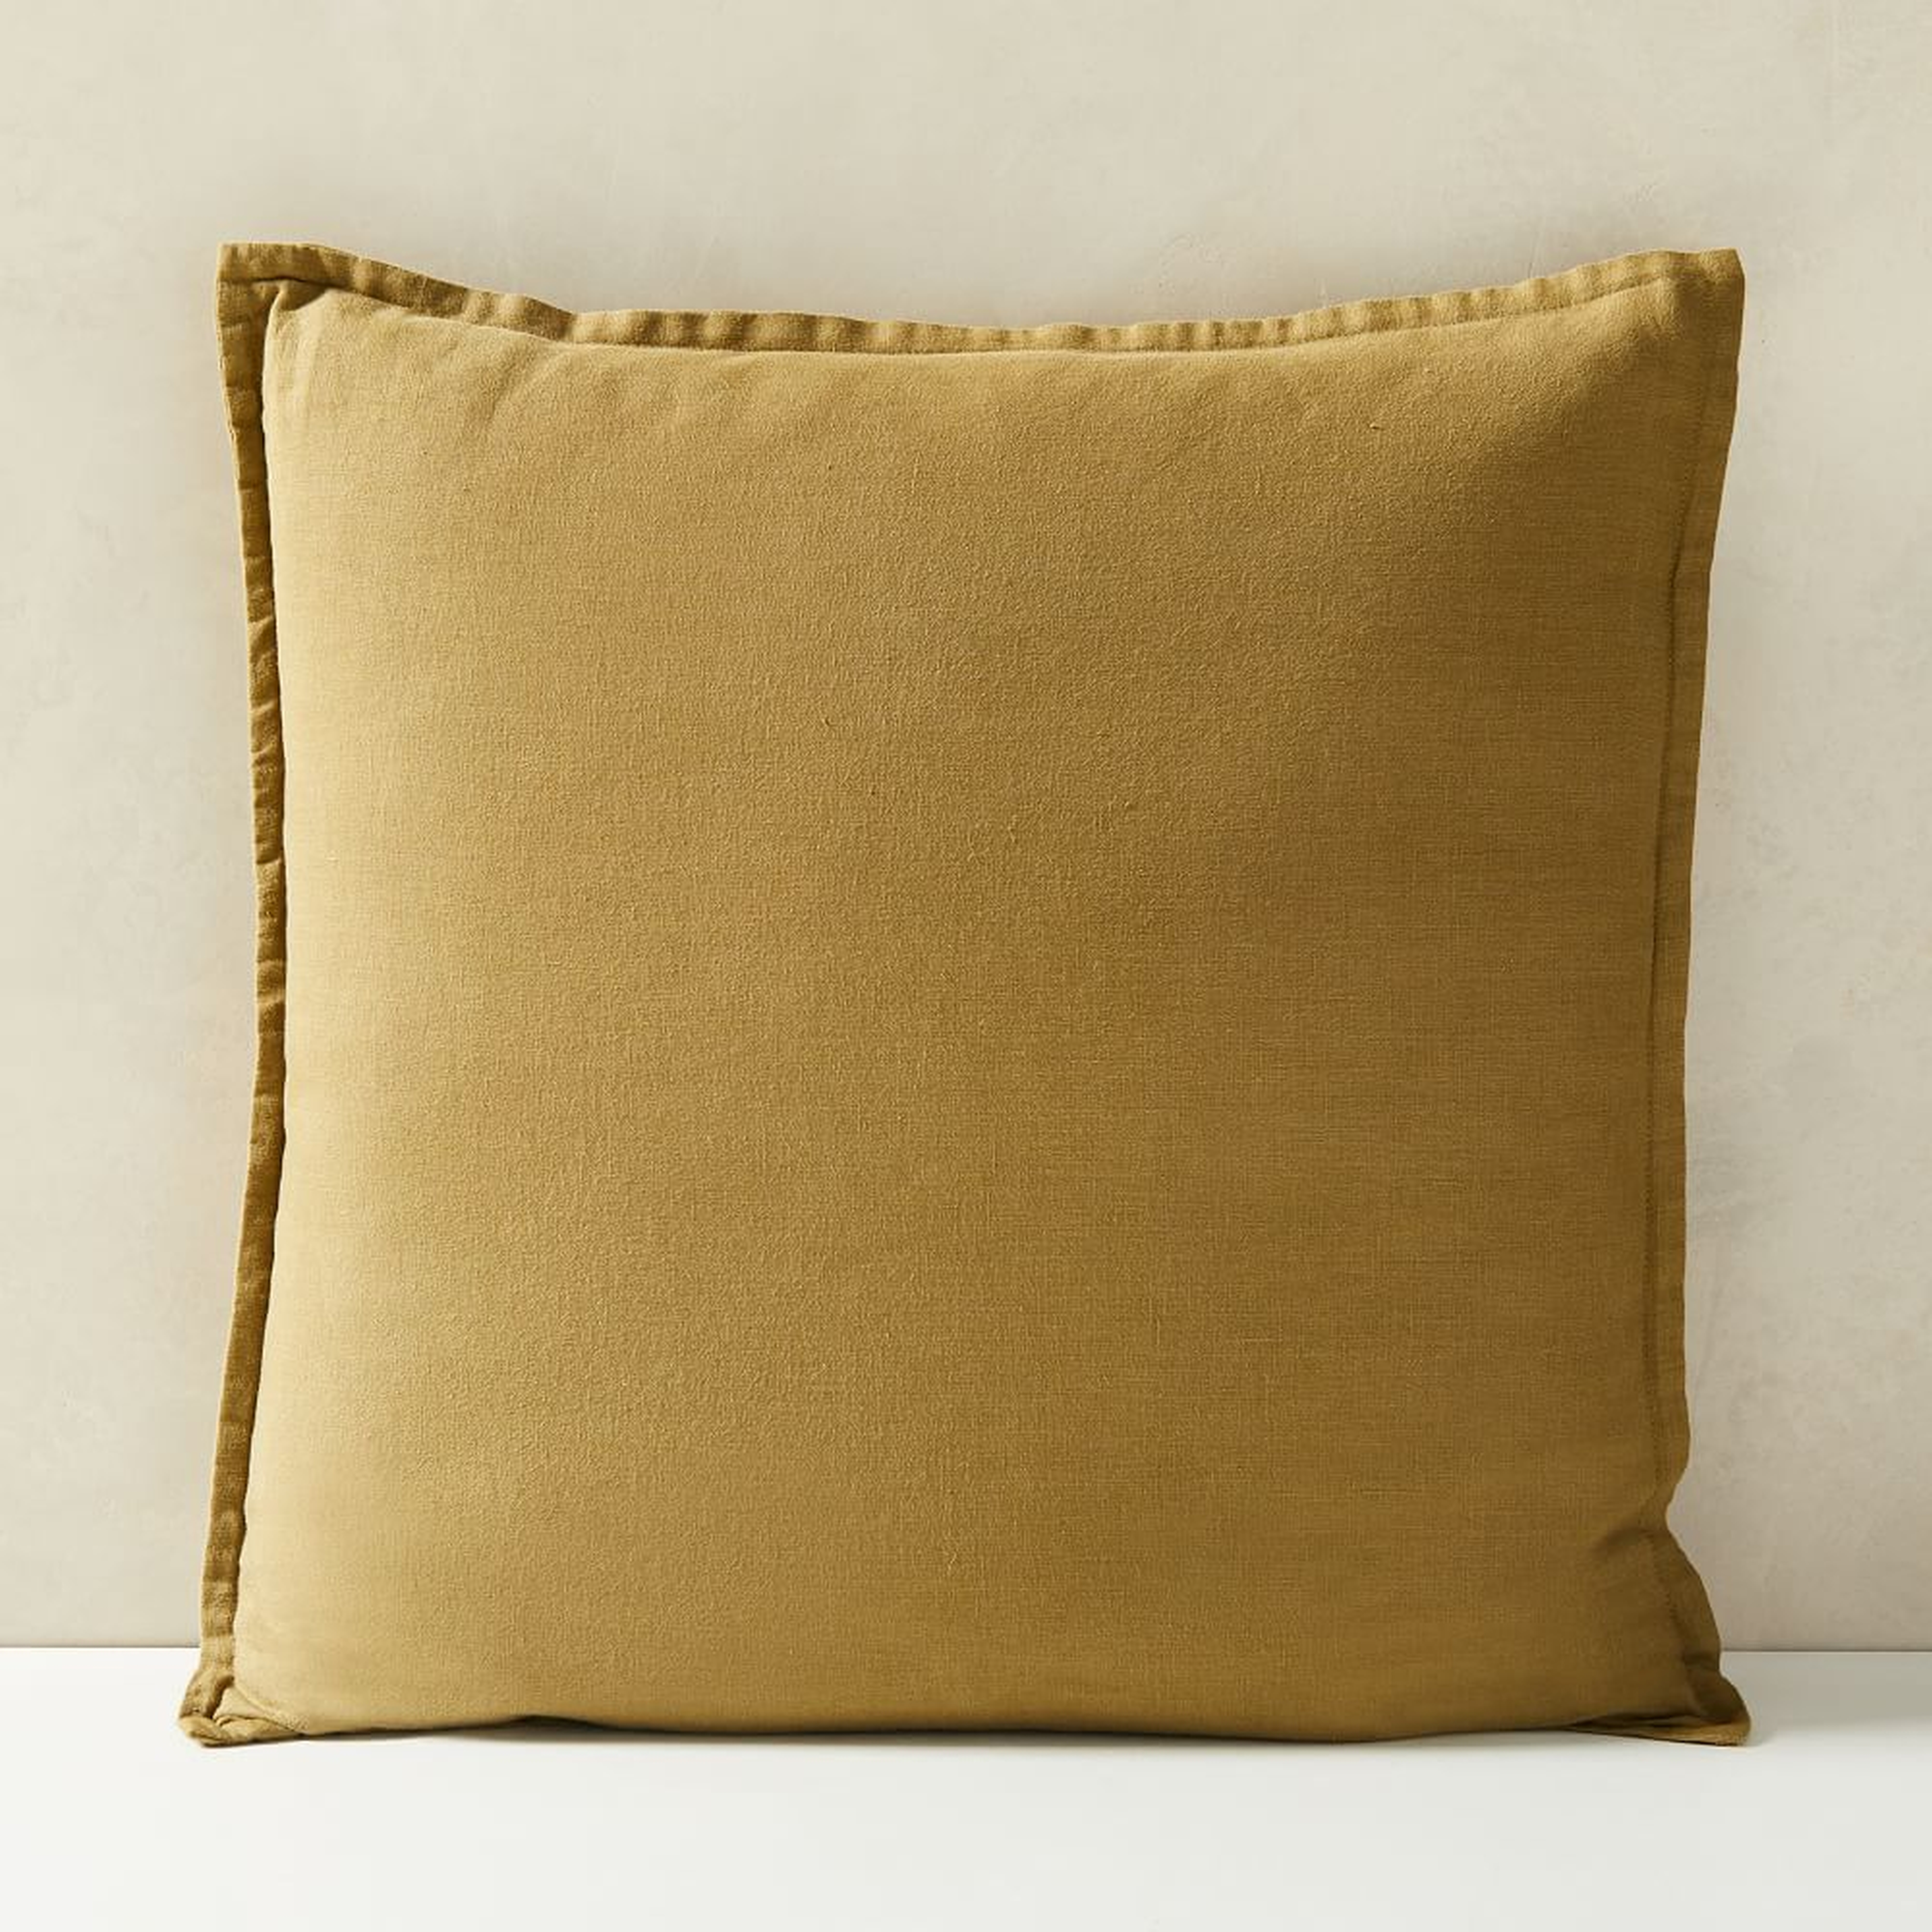 European Flax Linen Pillow Cover, 18"x18", Cedar - West Elm